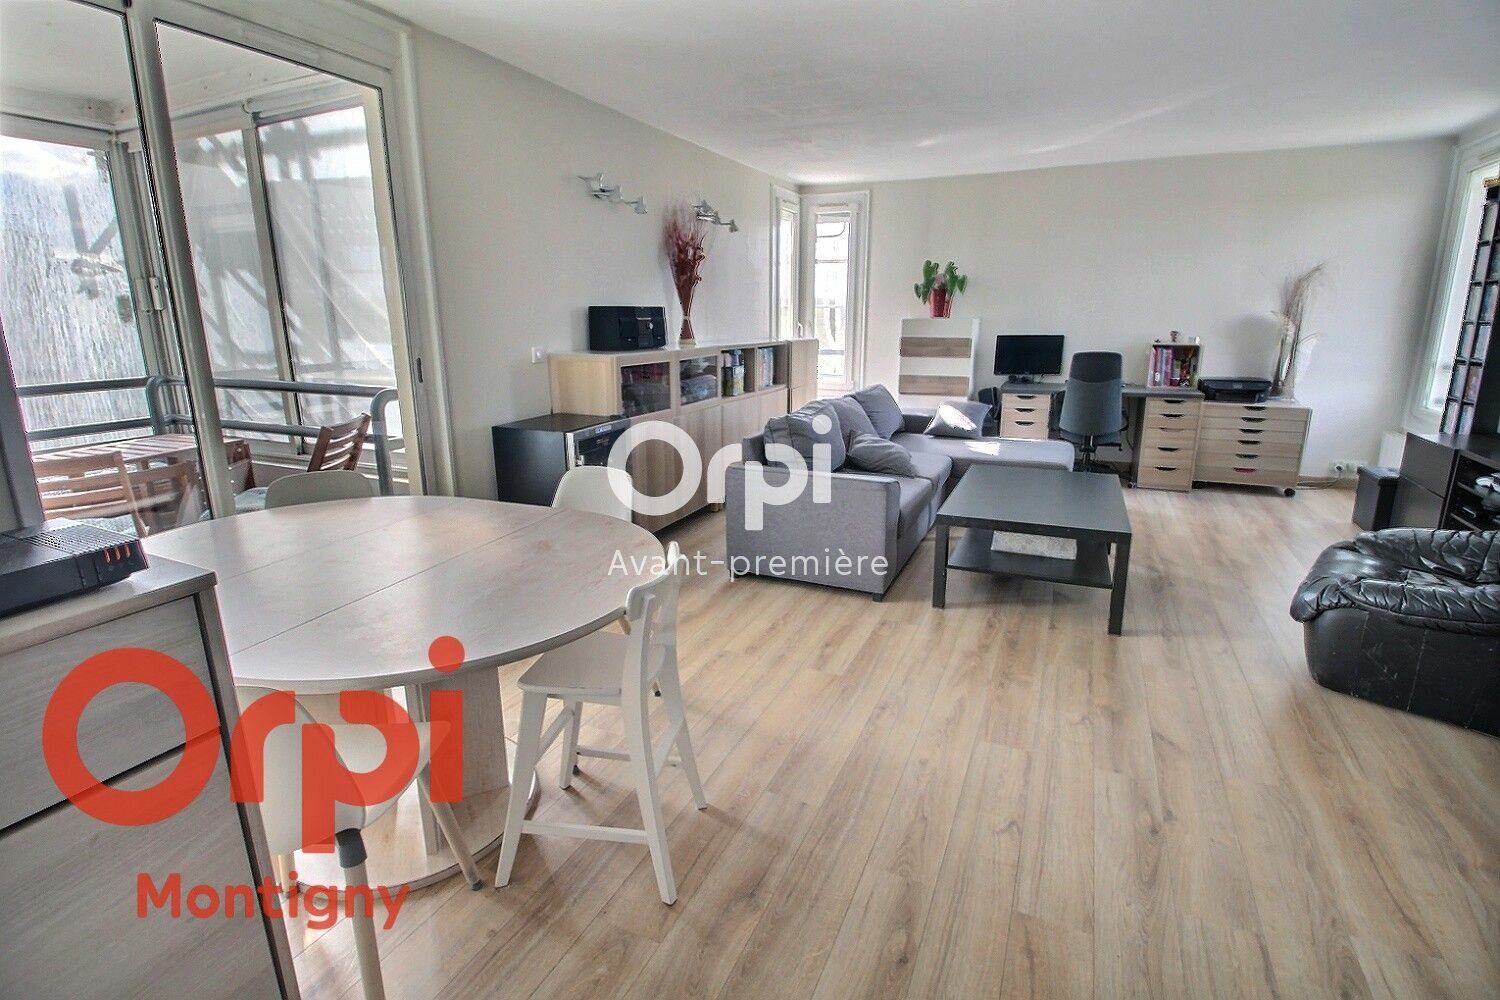 Appartement à vendre 4 81m2 à Montigny-le-Bretonneux vignette-1